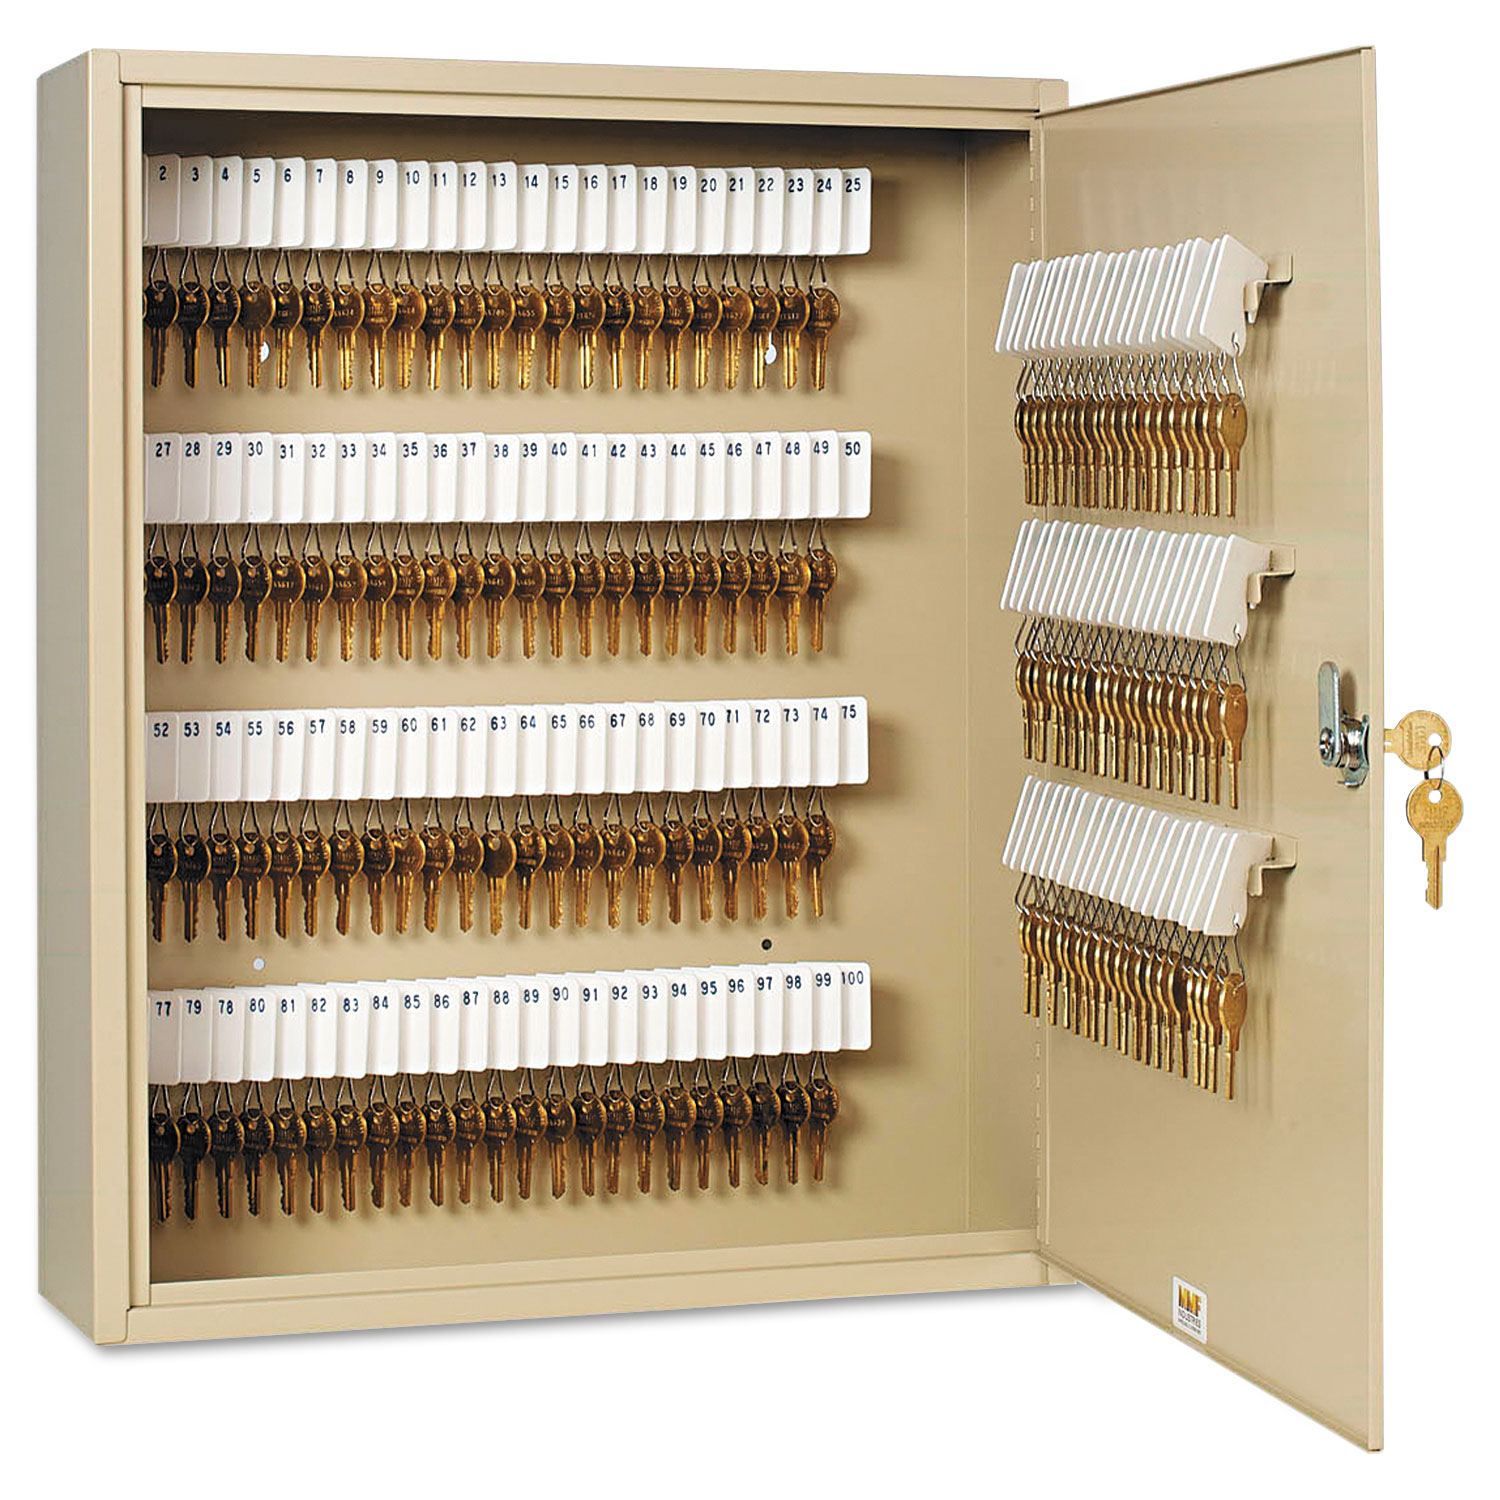  SteelMaster 201916003 Uni-Tag Key Cabinet, 160-Key, Steel, Sand, 16 1/2 x 4 7/8 x 20 1/8 (MMF201916003) 